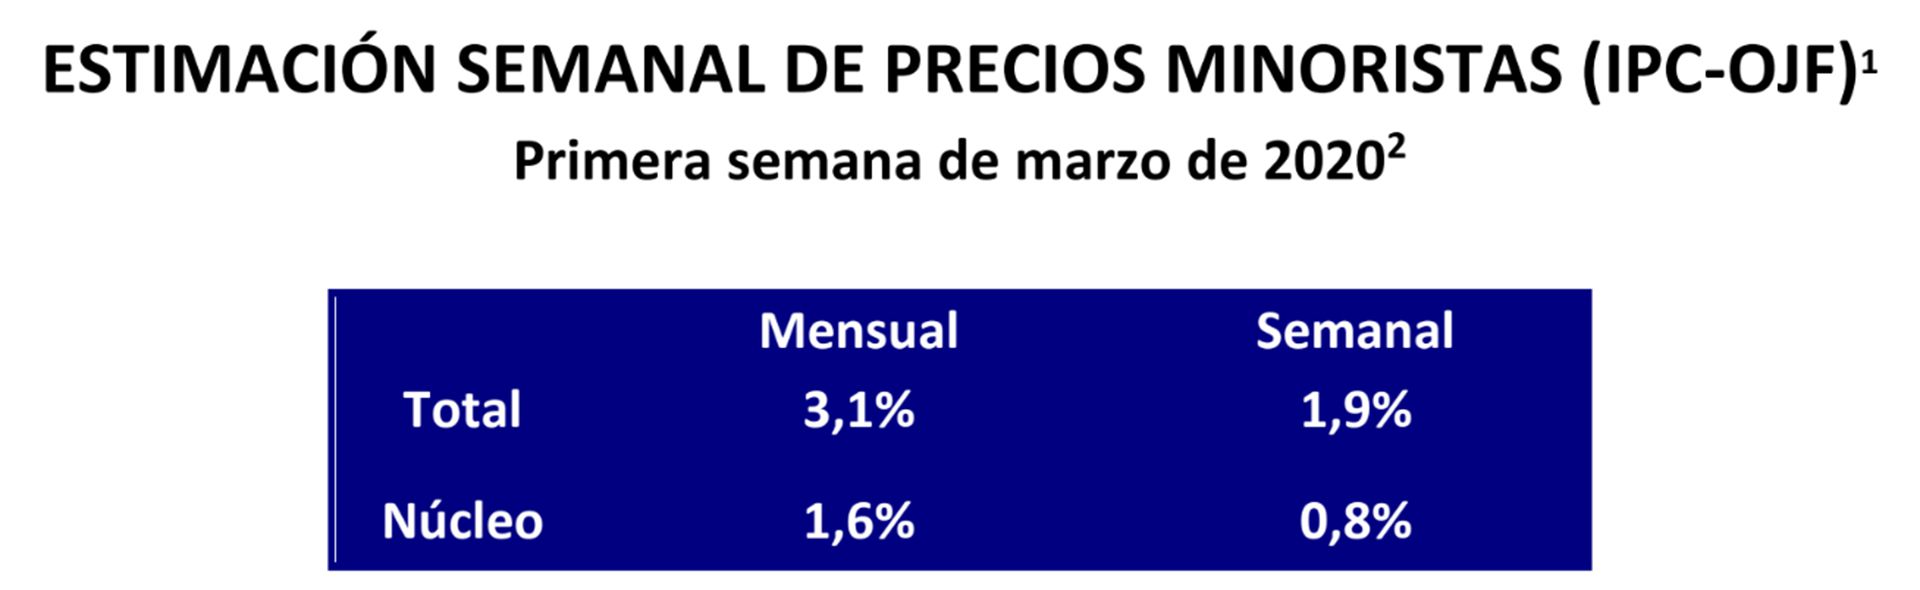 Los resultados del IPC de Ferreres de la primera semana de marzo